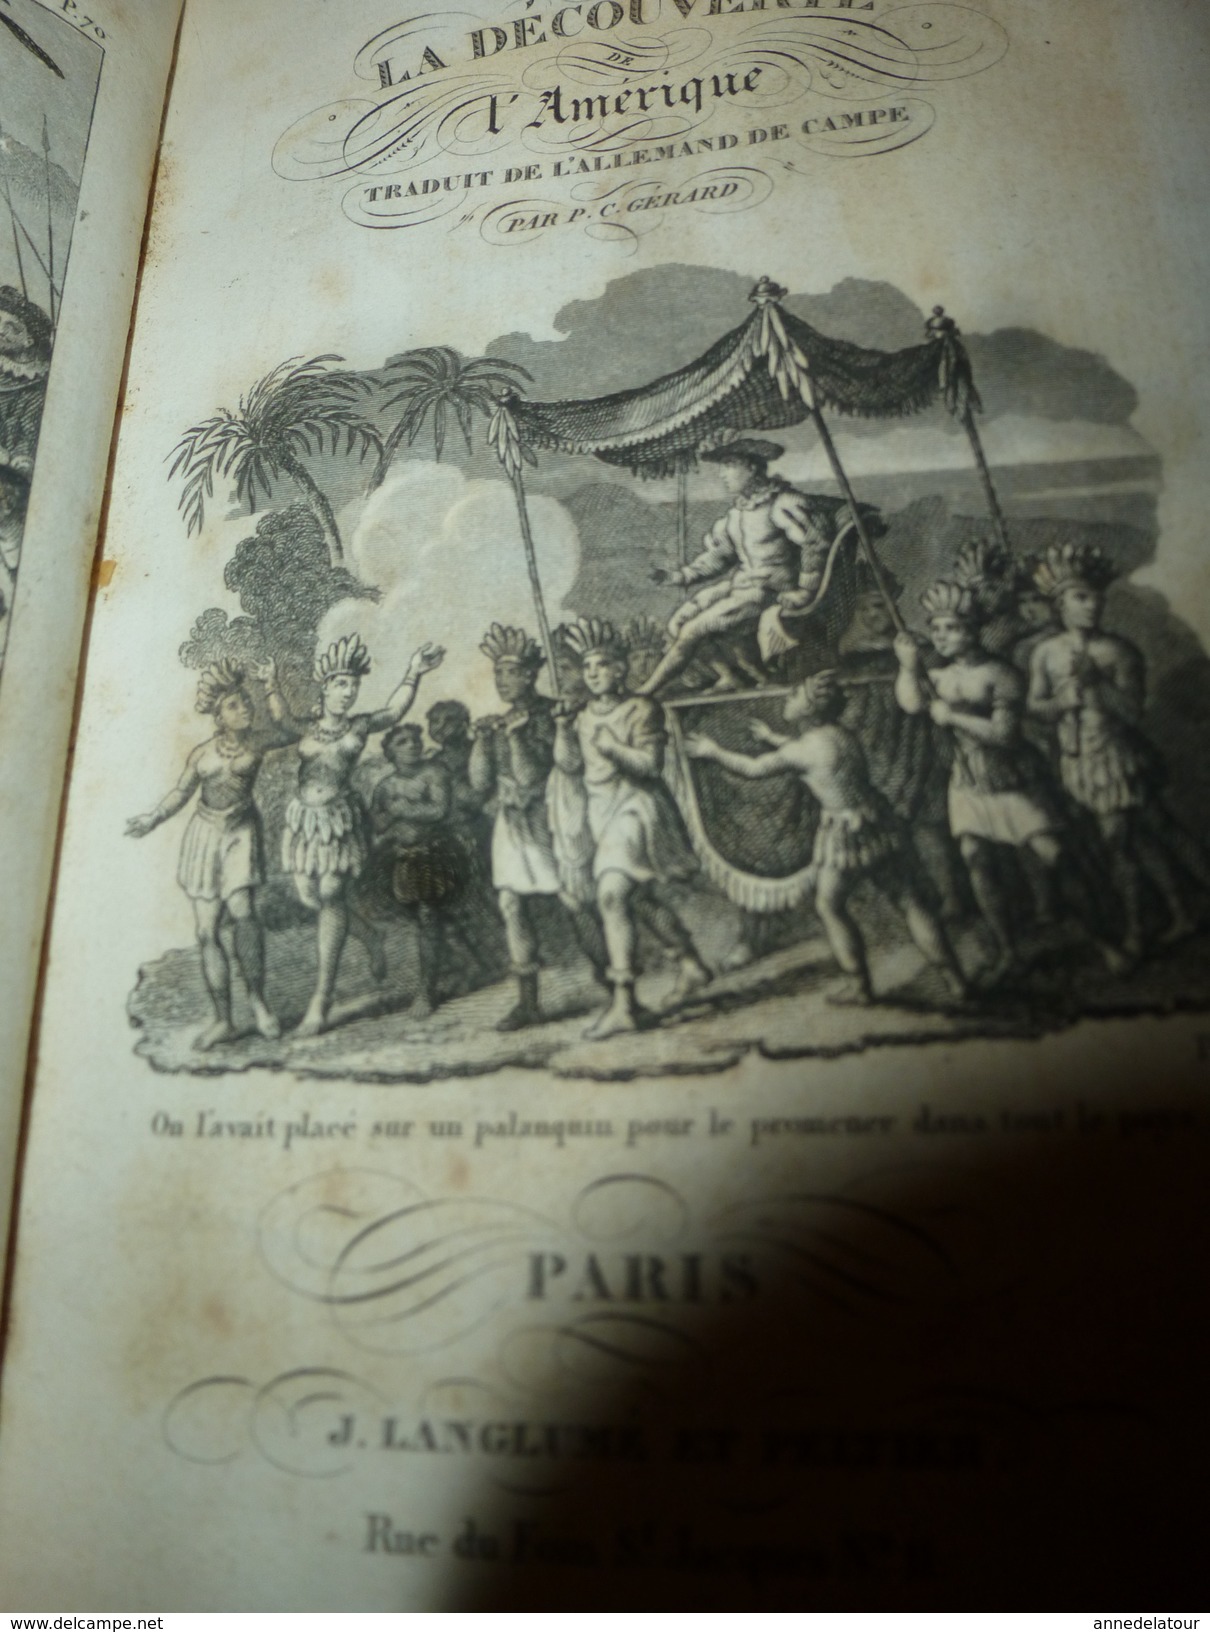 1843 La DECOUVERTE de l'AMERIQUE trad. de l'allemand DE CAMPE par P. C. GERARD (408 p. dont 3 gravures) couverture cuir